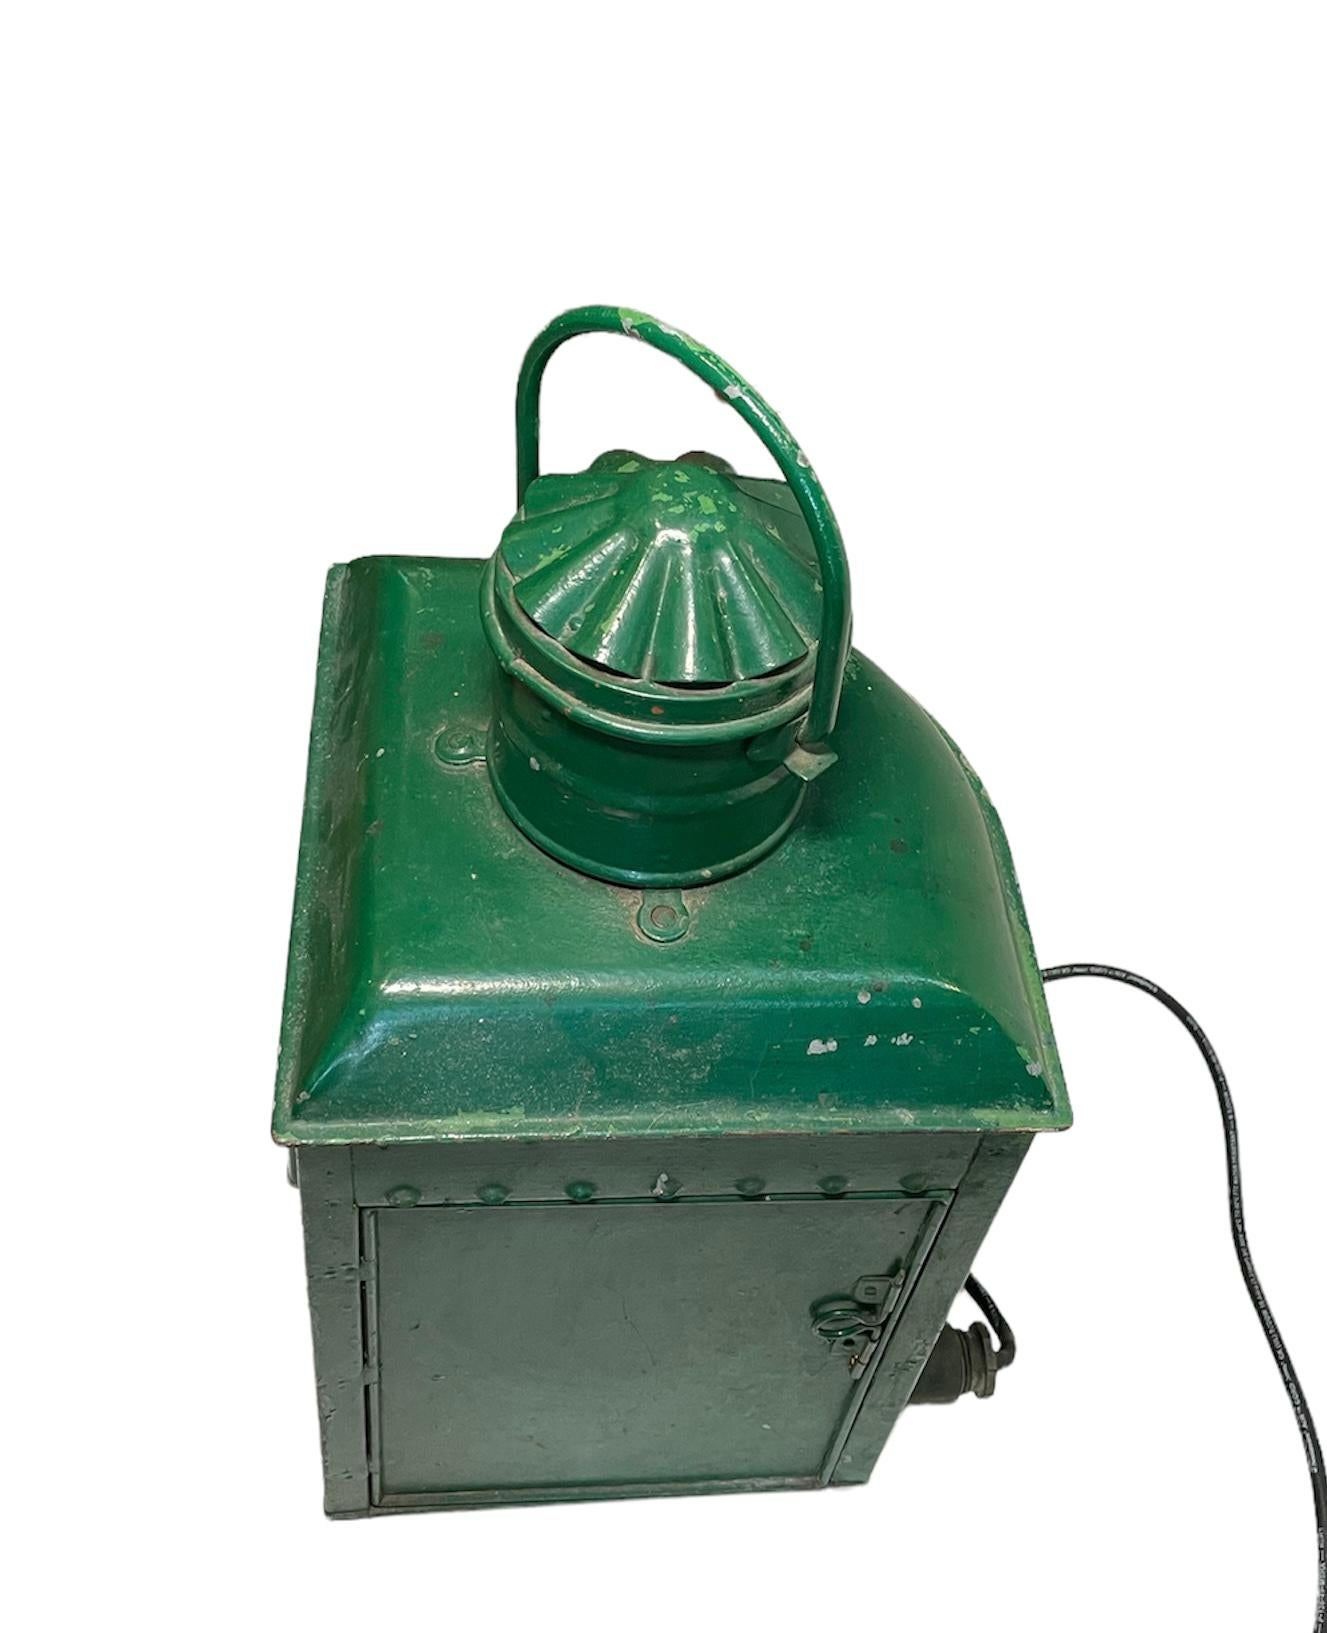 Il s'agit d'une ancienne grande lanterne nautique à huile. Elle représente une lanterne de port en métal peinte en vert avec un abat-jour en verre bleu. Il est électrifié.